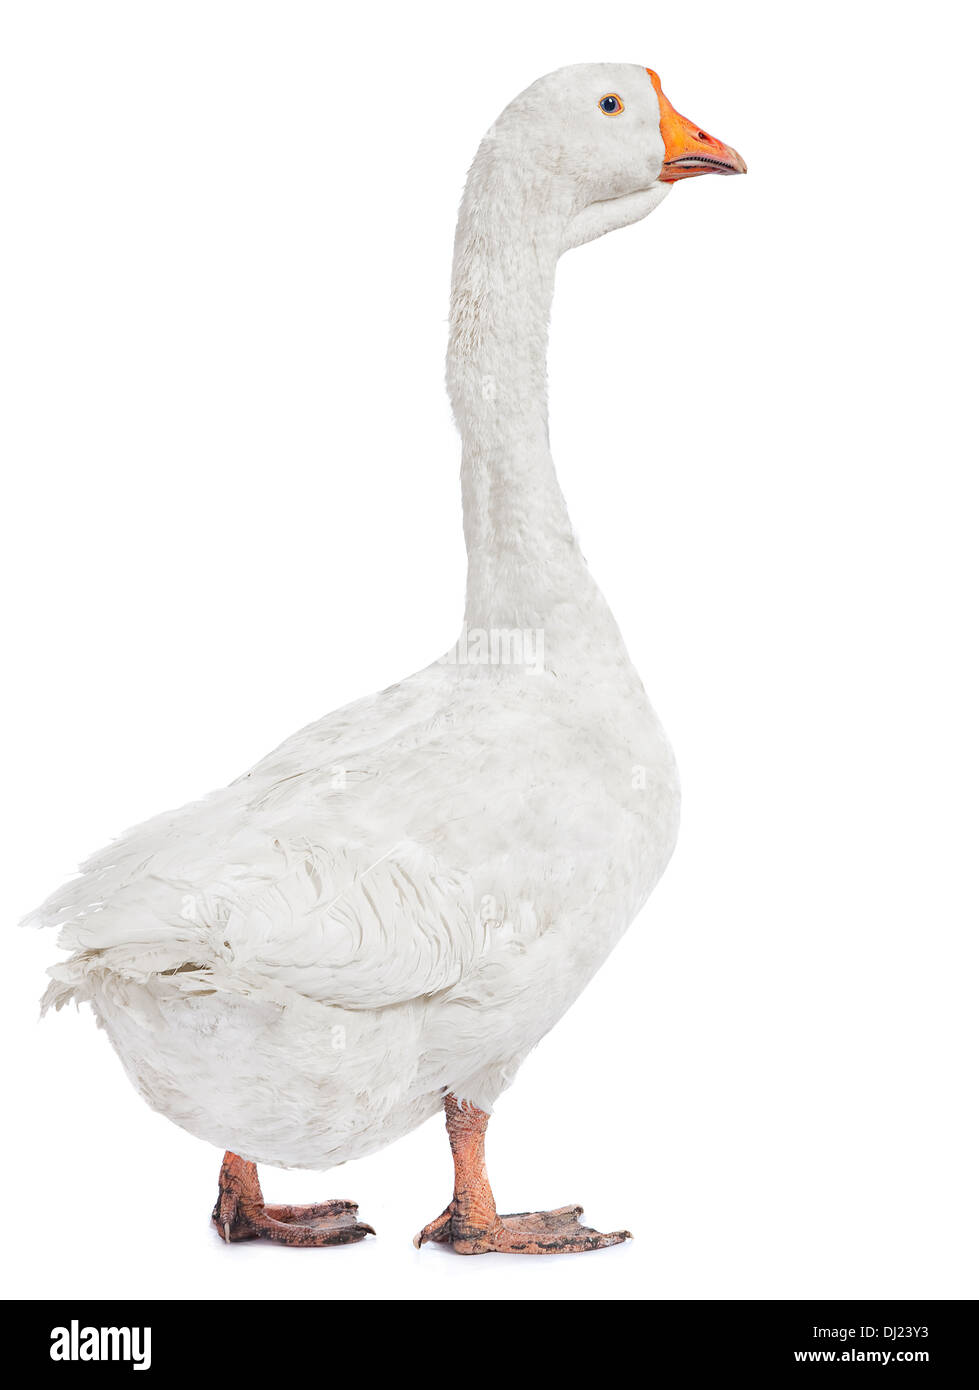 White goose farm bird isolated on white Stock Photo